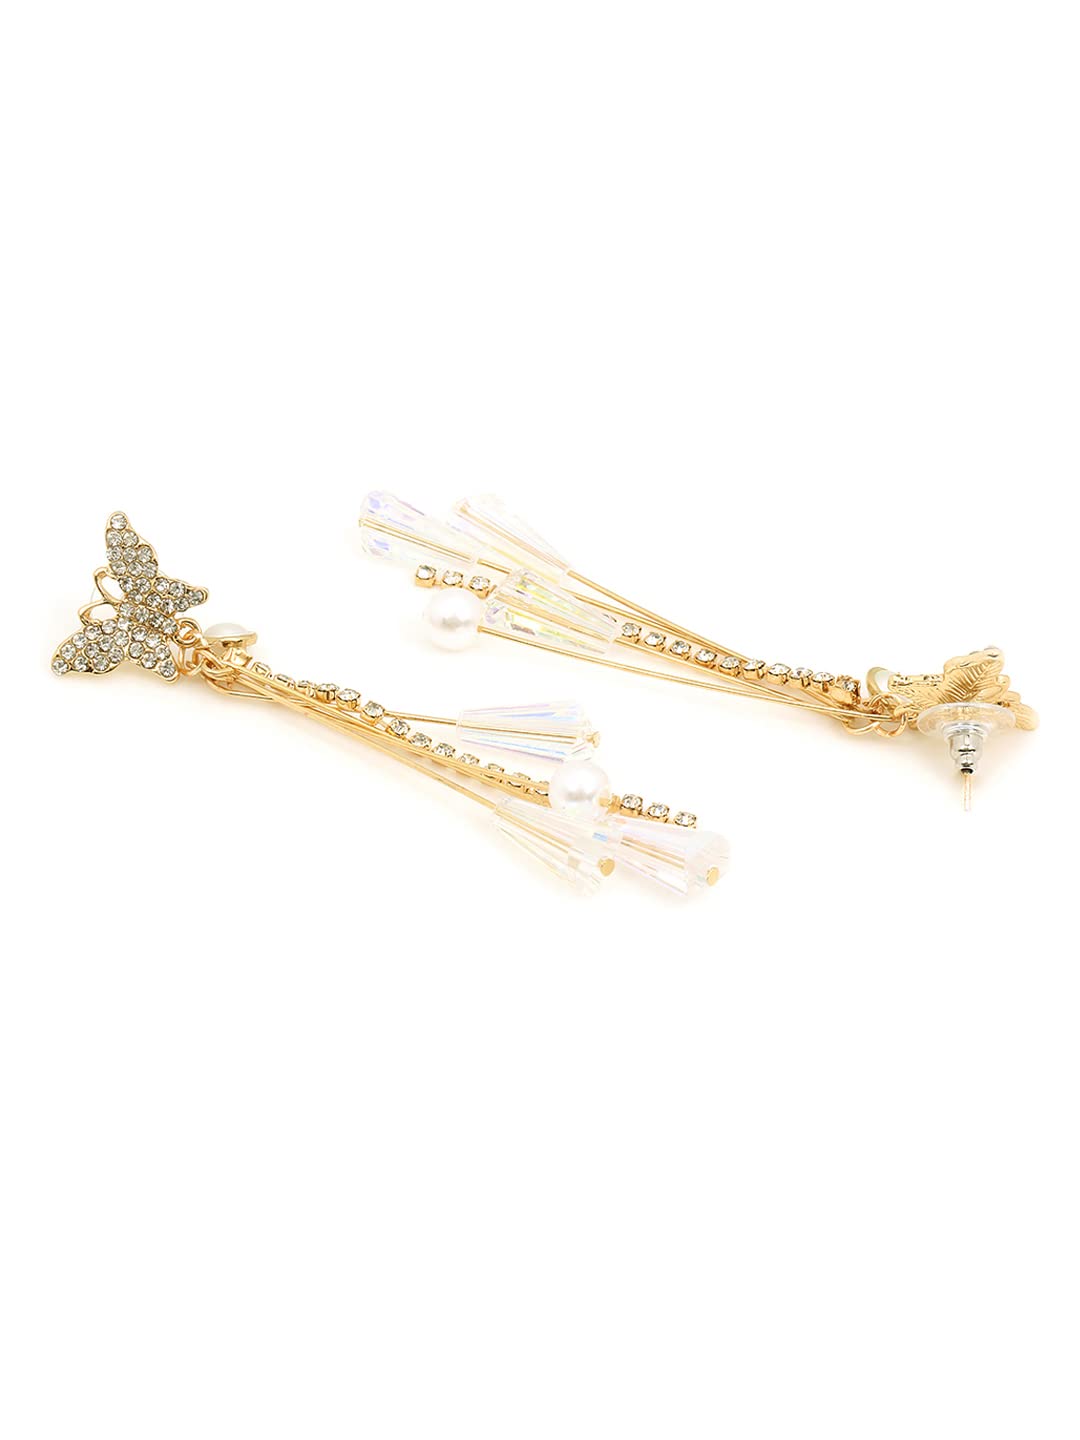 White Rose Gold Danglers  Designer Earrings for Women  Calligraphy Dangler  Earrings by Blingvine